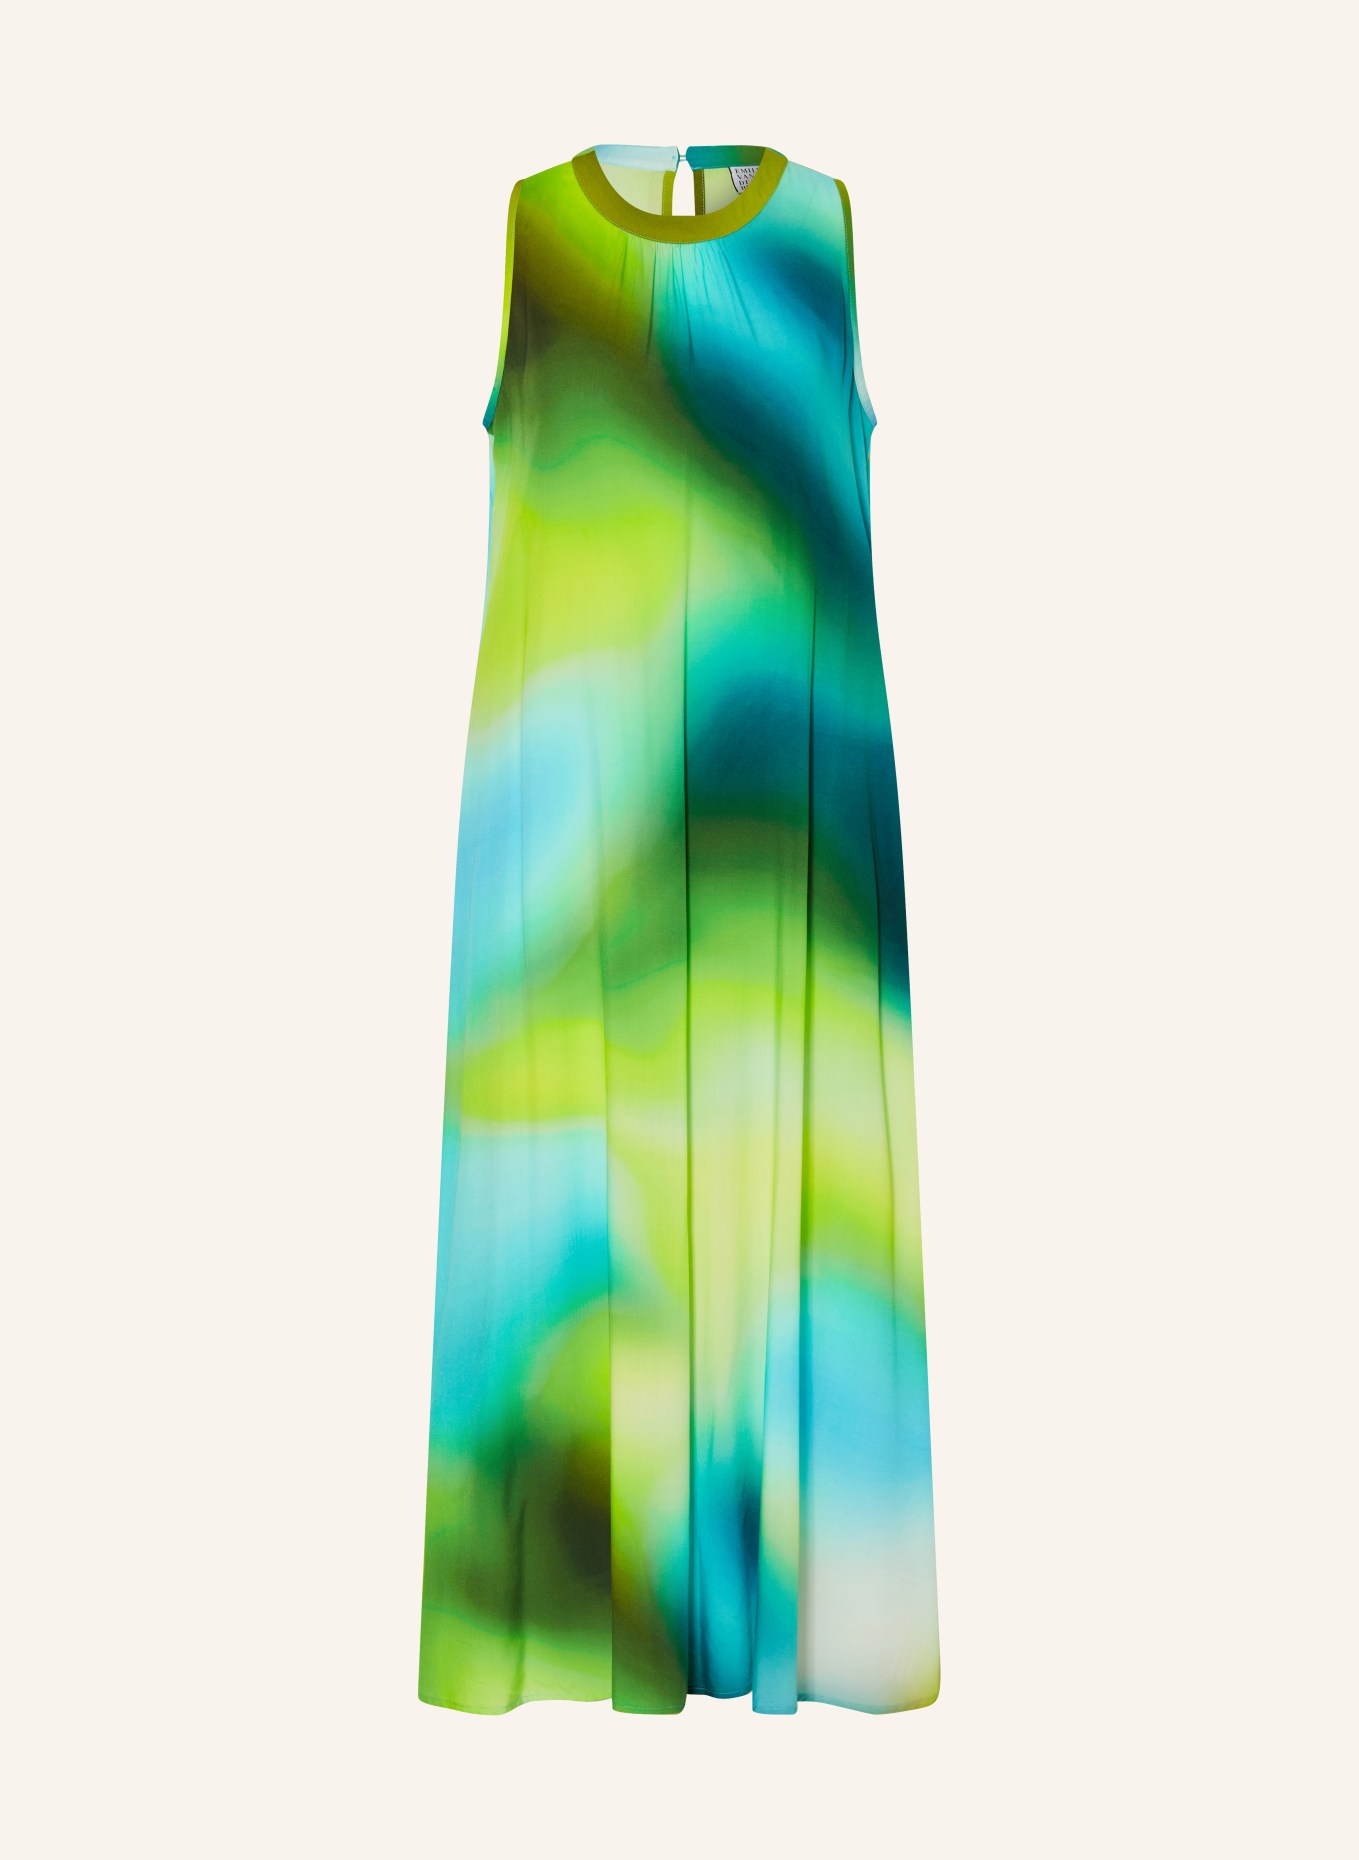 Emily VAN DEN BERGH Kleid, Farbe: NEONGRÜN/ PETROL/ TÜRKIS (Bild 1)